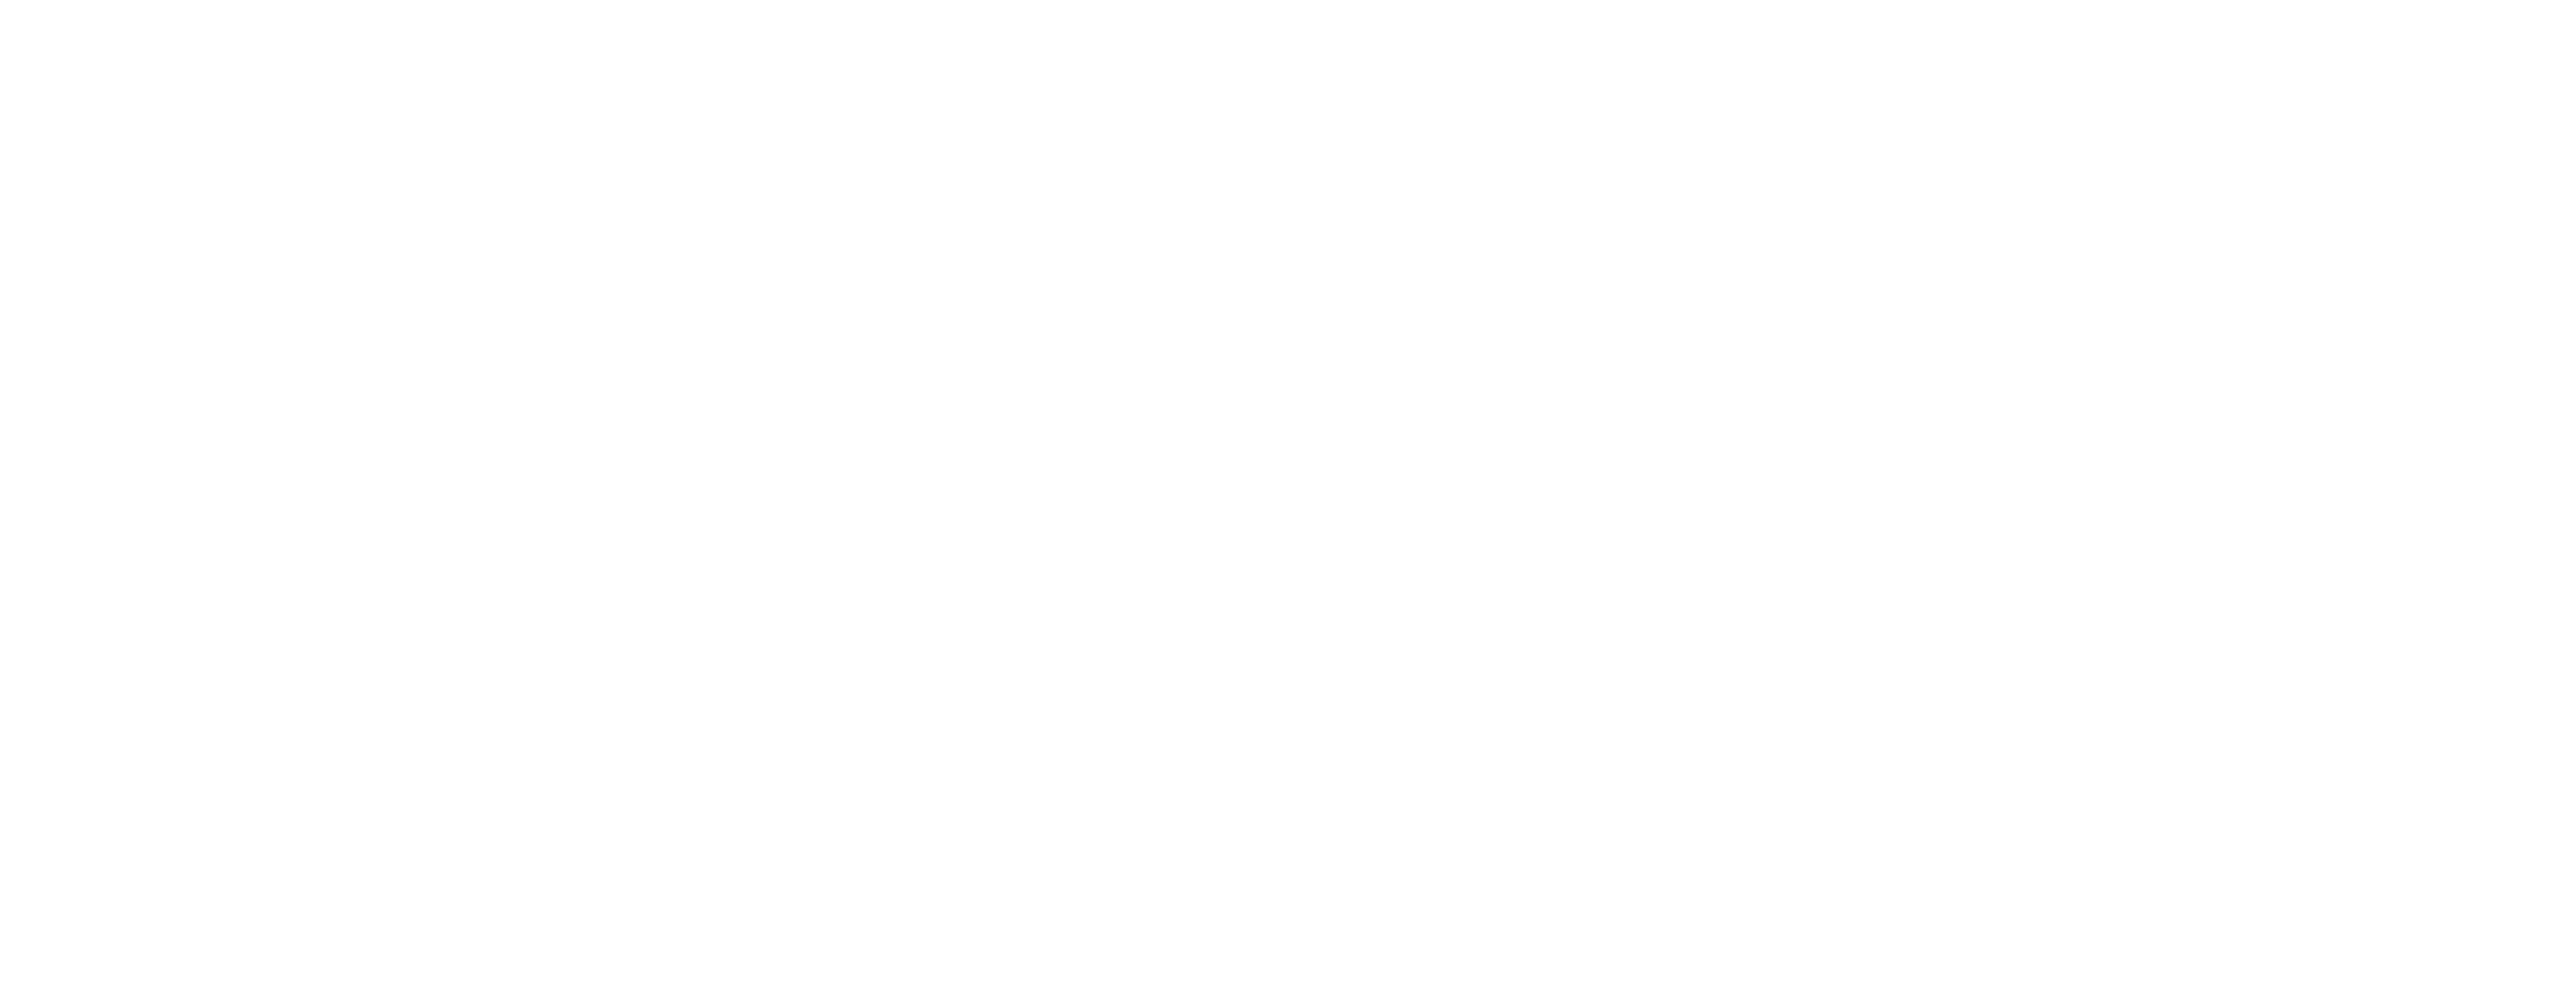 19Seventy Logo